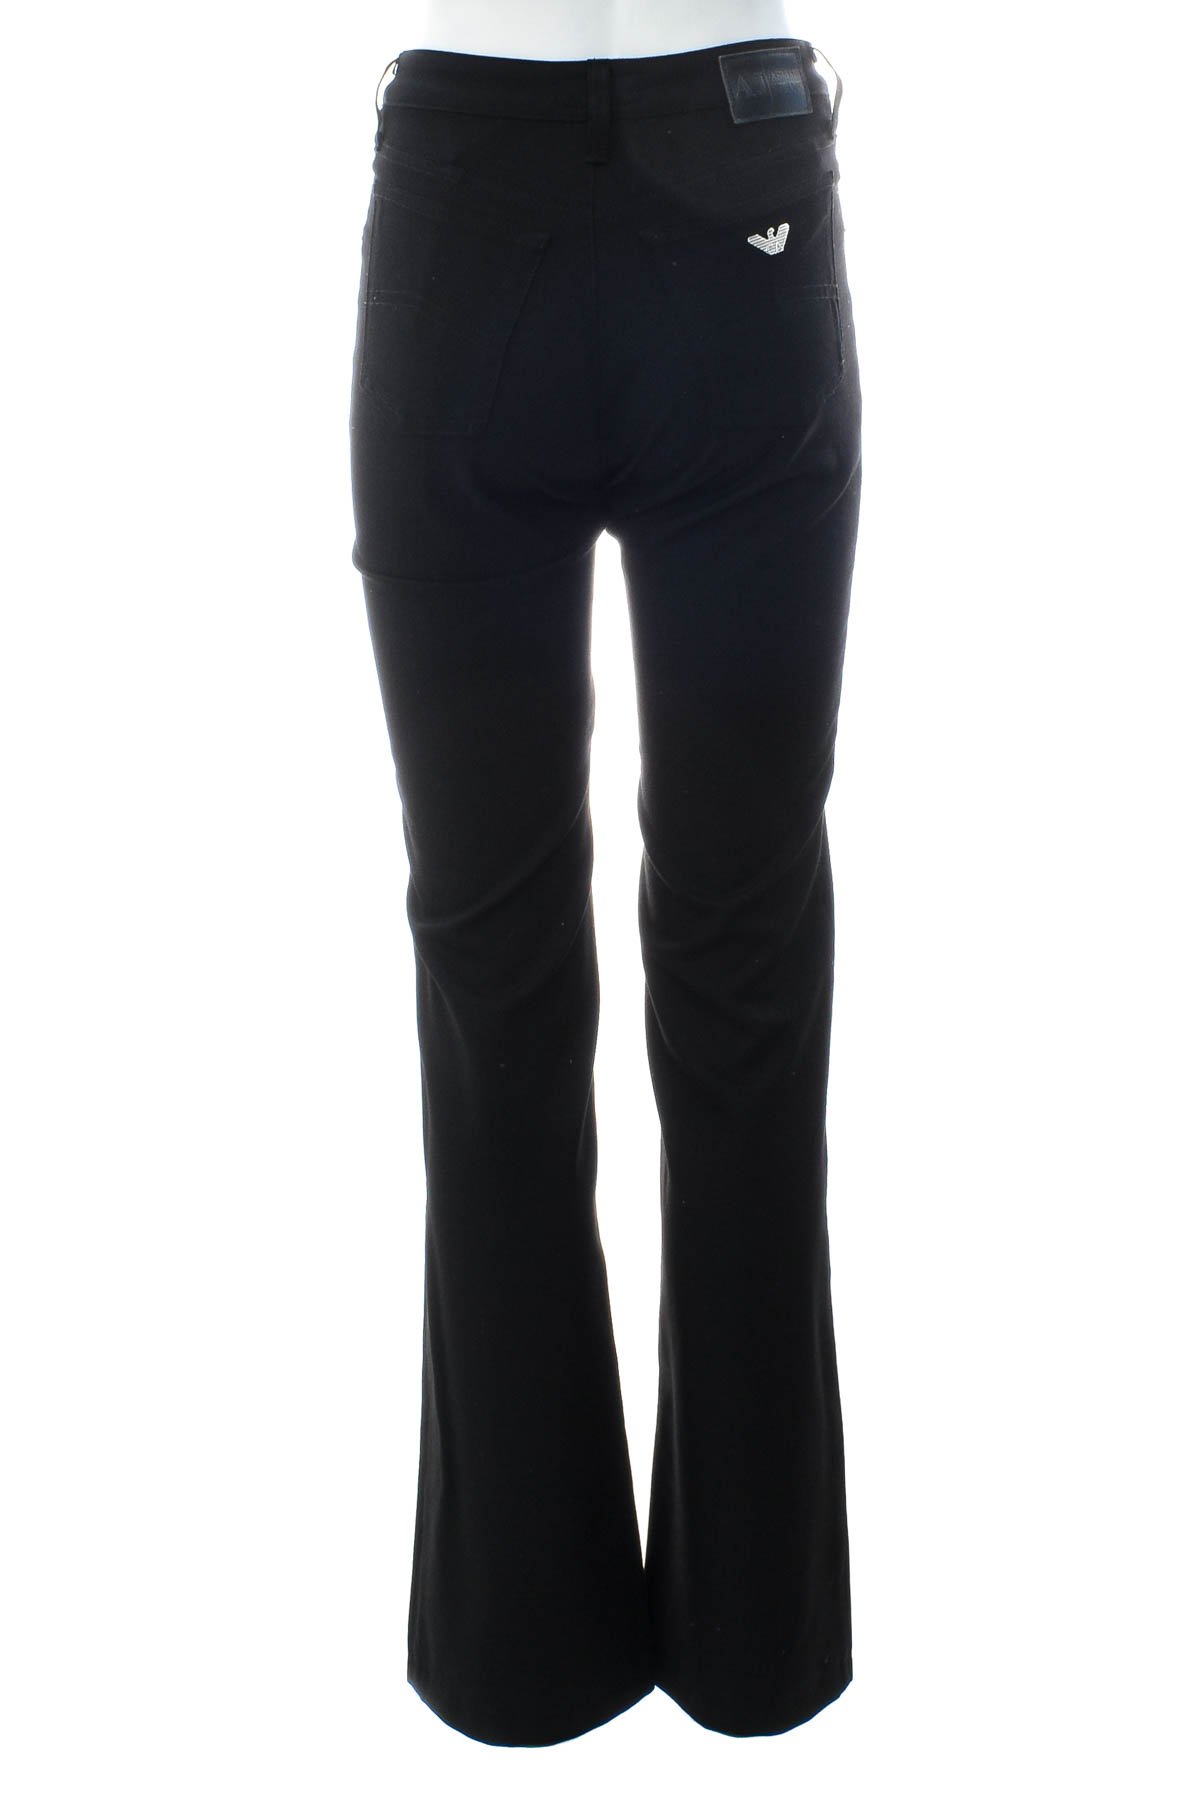 Γυναικείο παντελόνι - Armani Jeans - 1